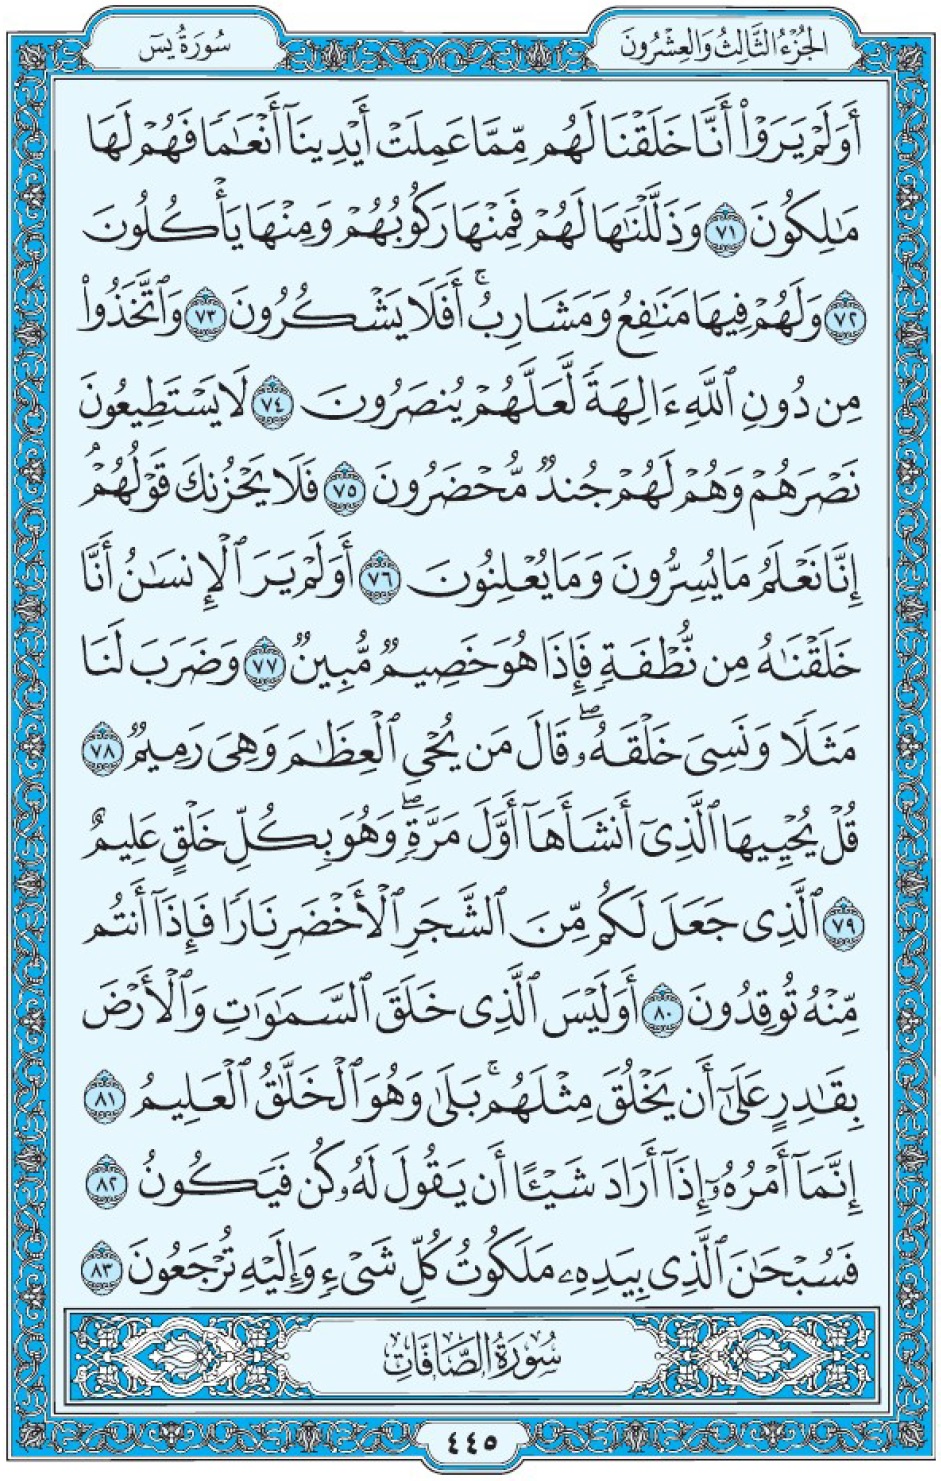 Коран Мединский мусхаф страница 445, Йа Син, аят 71-83